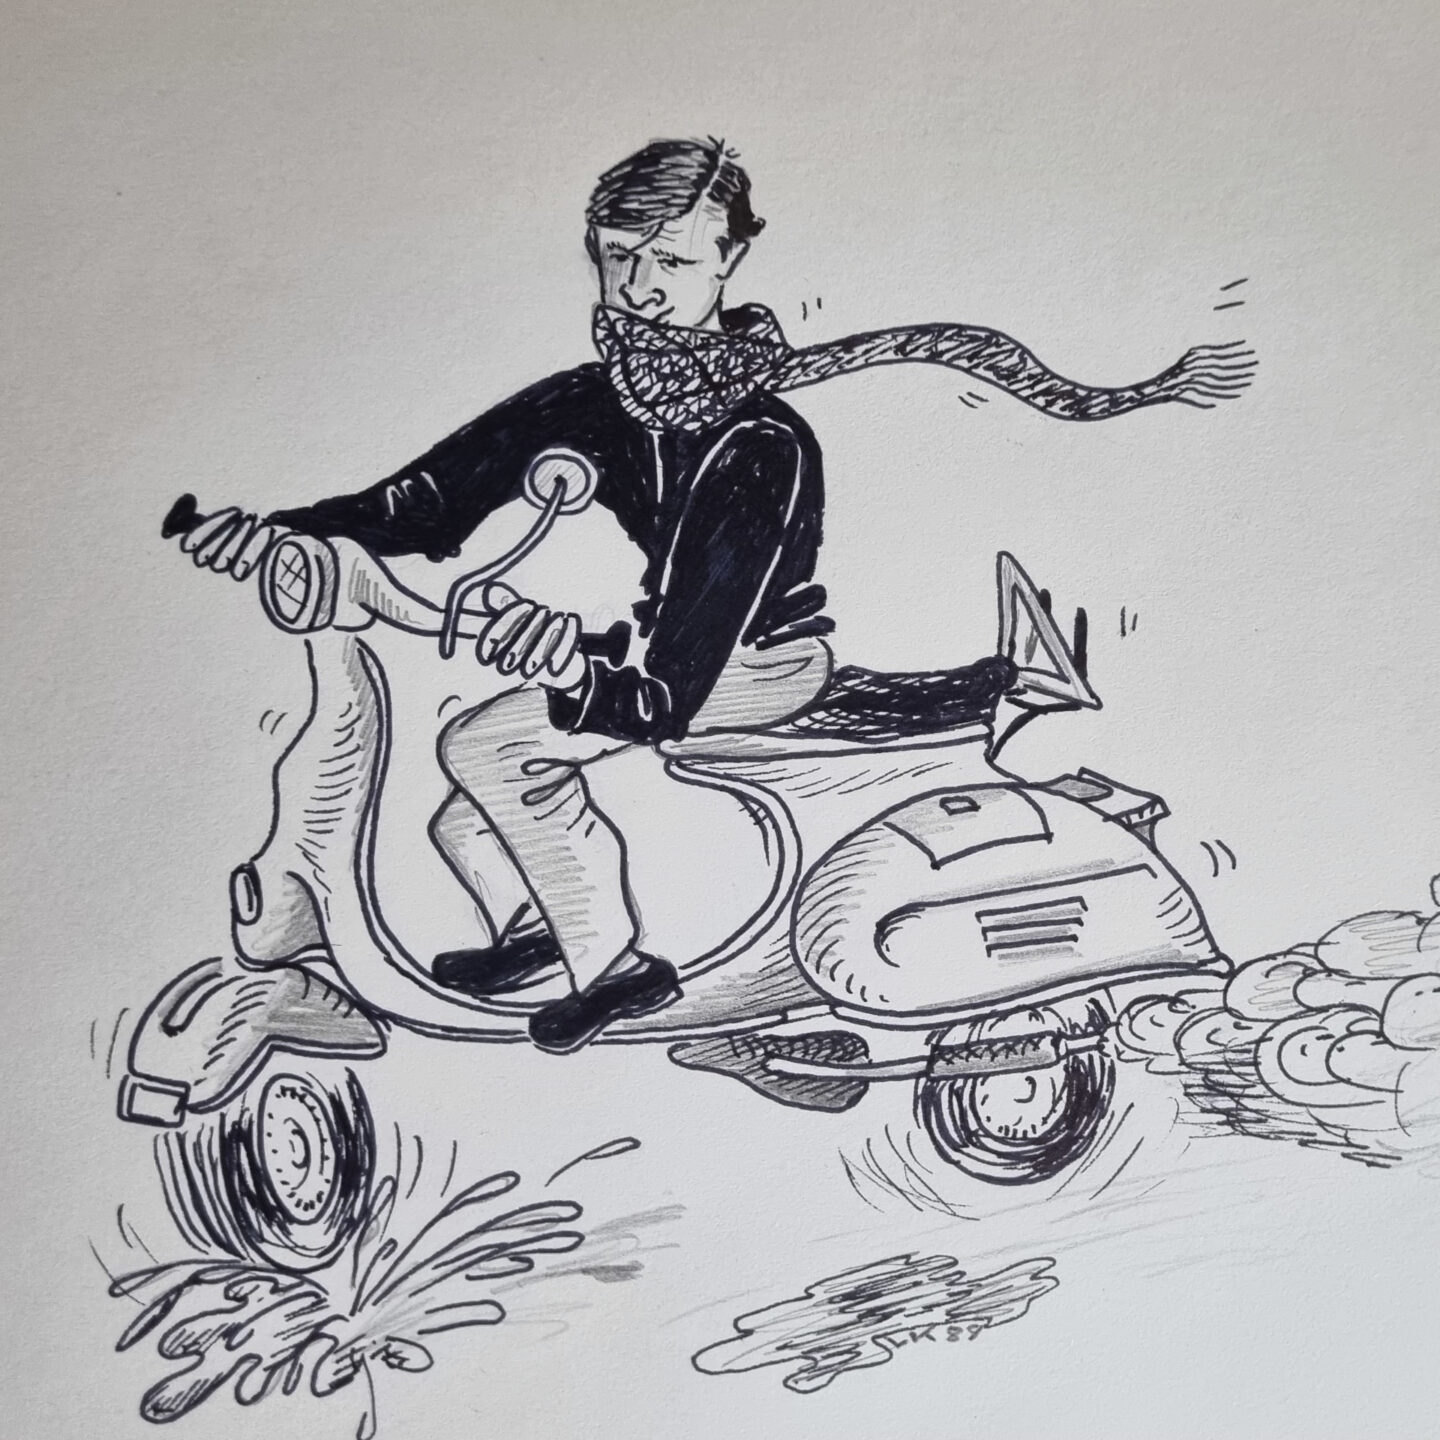 Karikatur von Peter Camenzind auf seiner Vespa in Rom, gezeichnet von einem Kommilitonen